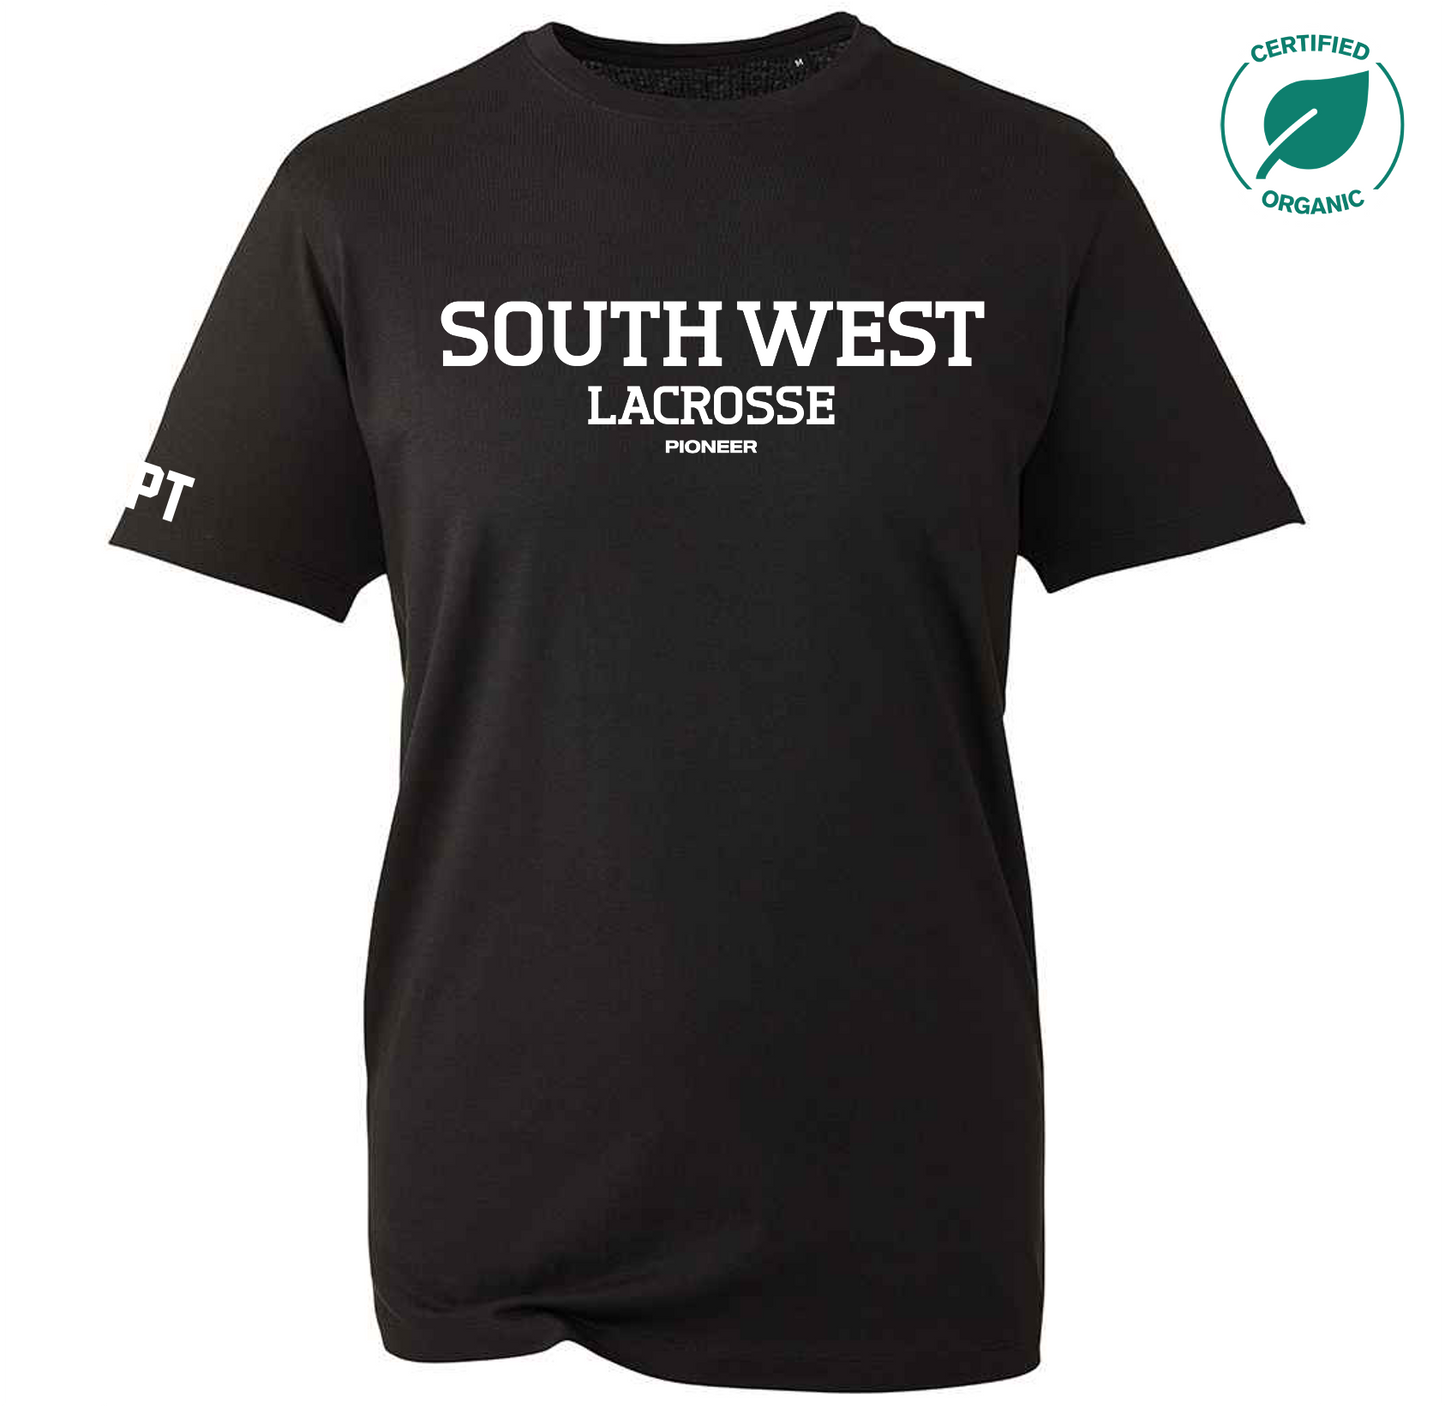 South West Lacrosse Organic Cotton T-Shirt